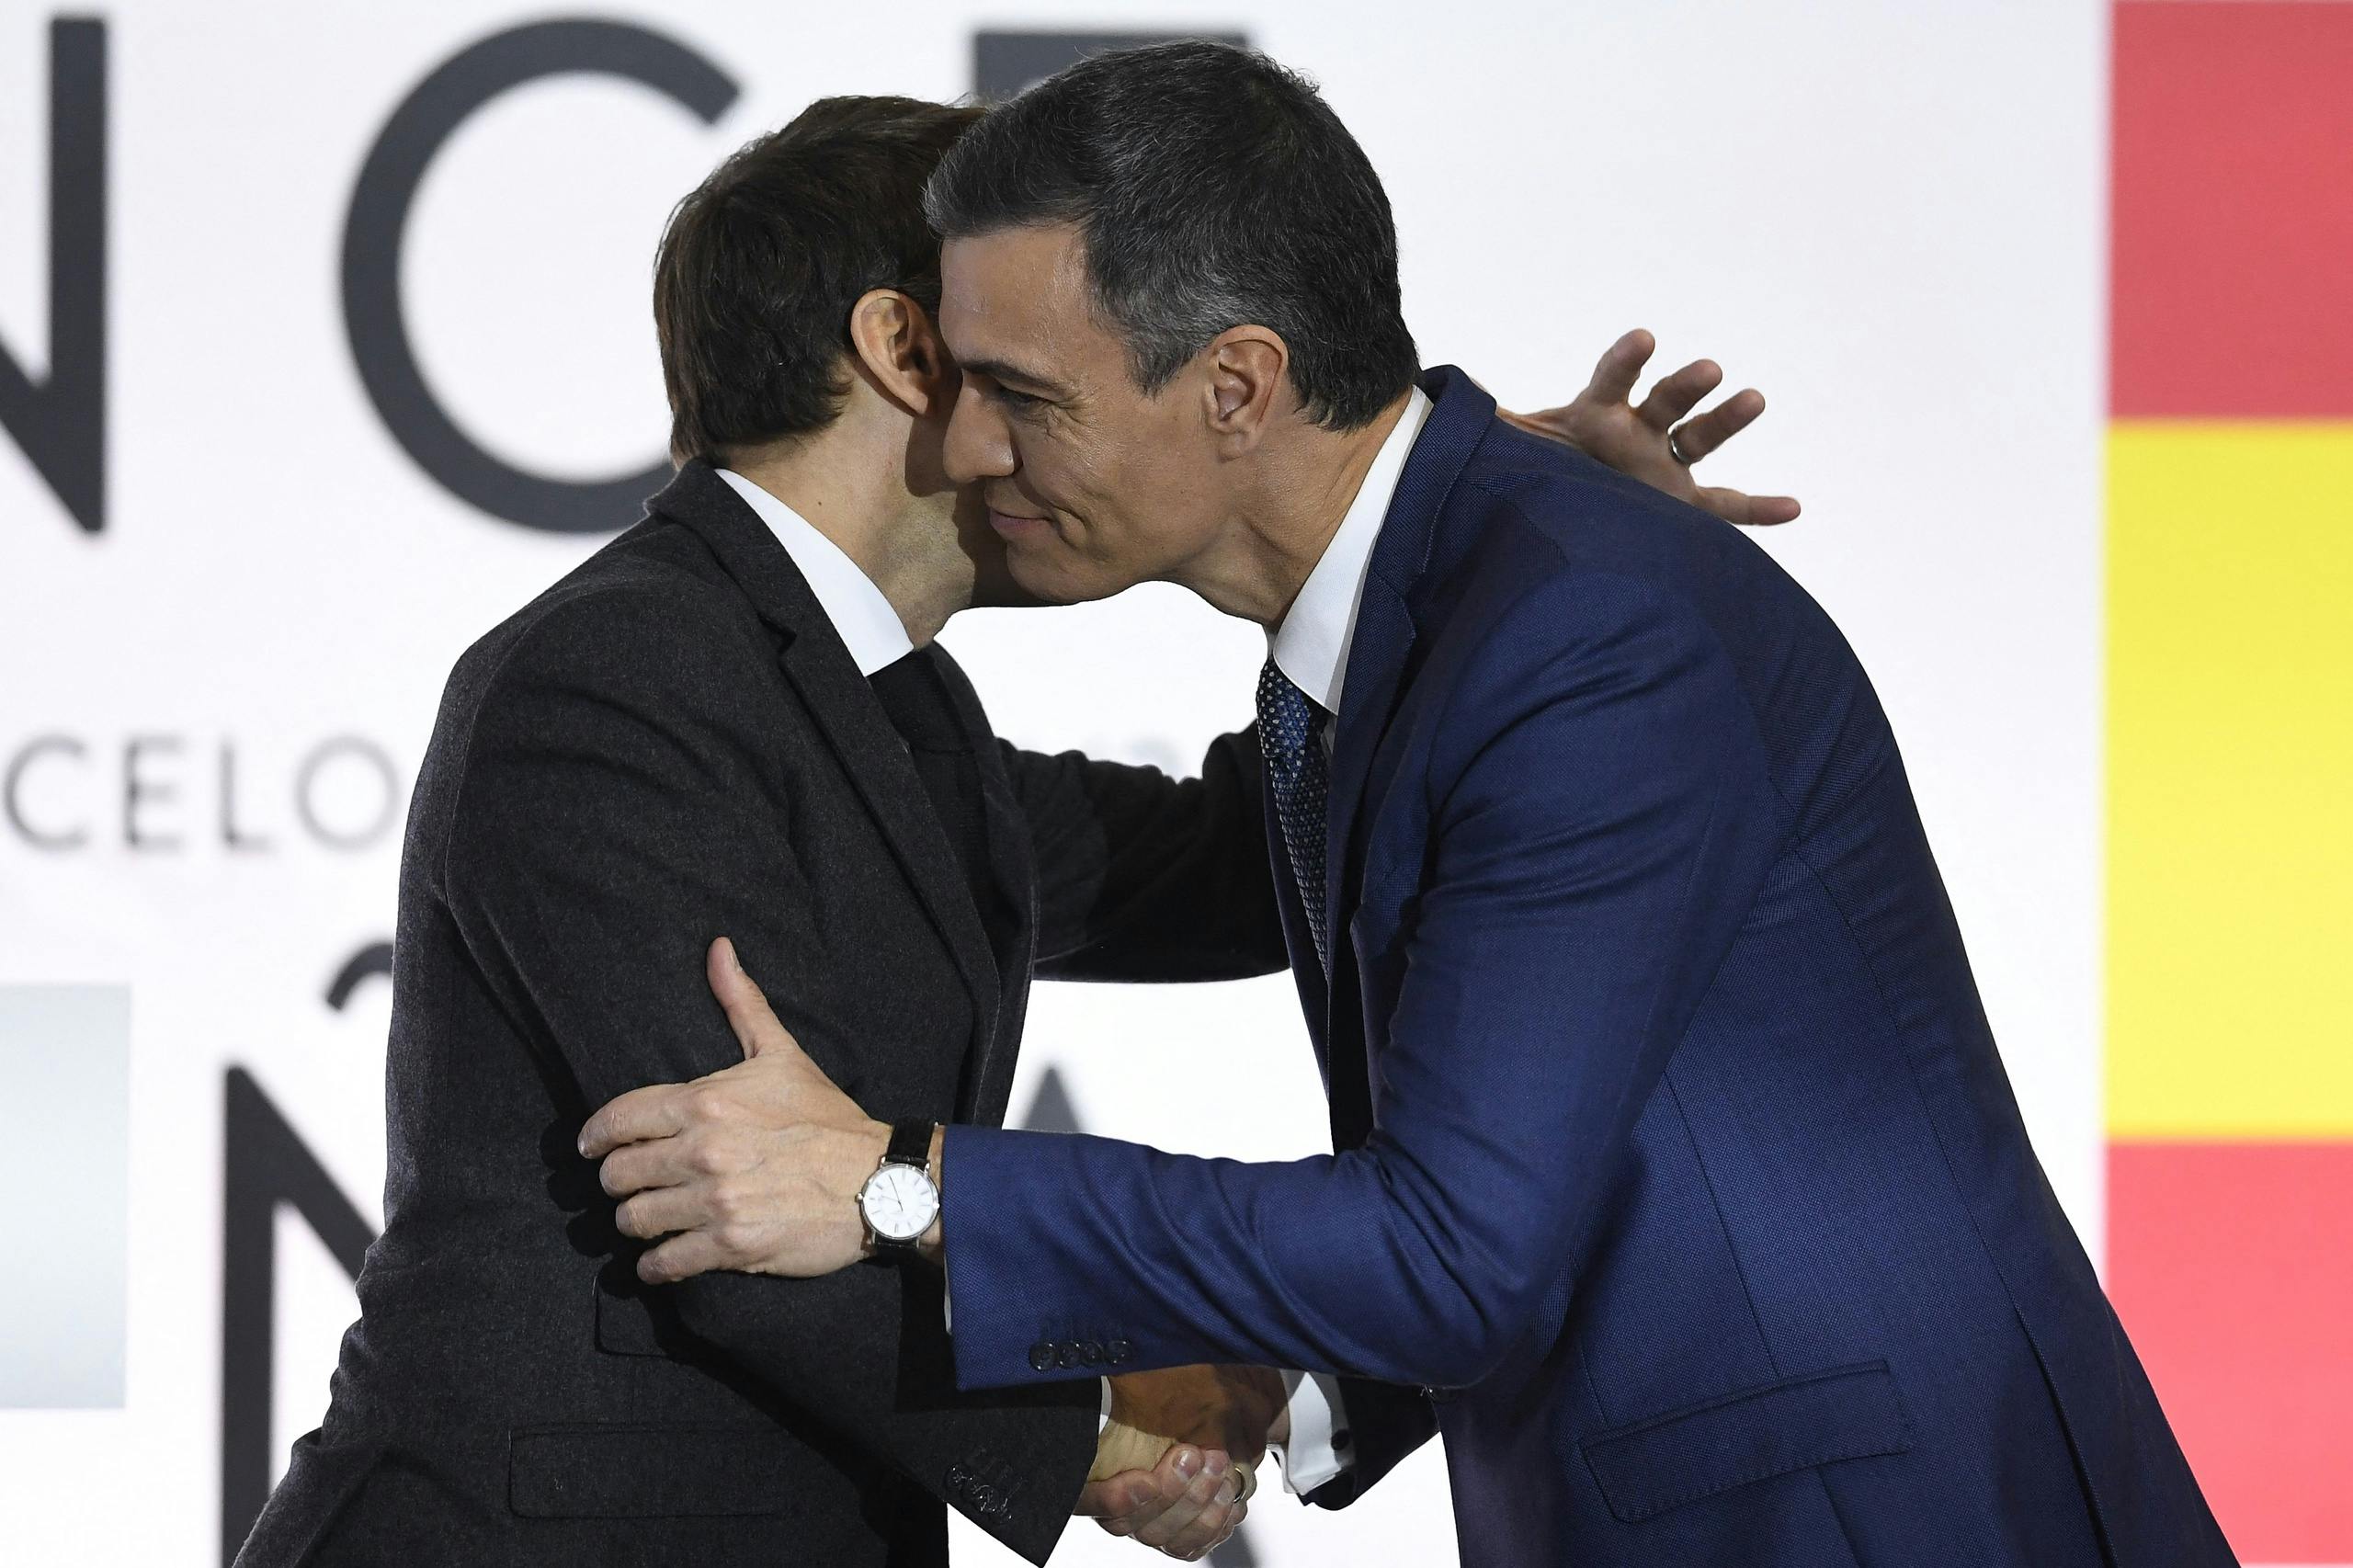 La France et l’Espagne scellent leur amitié